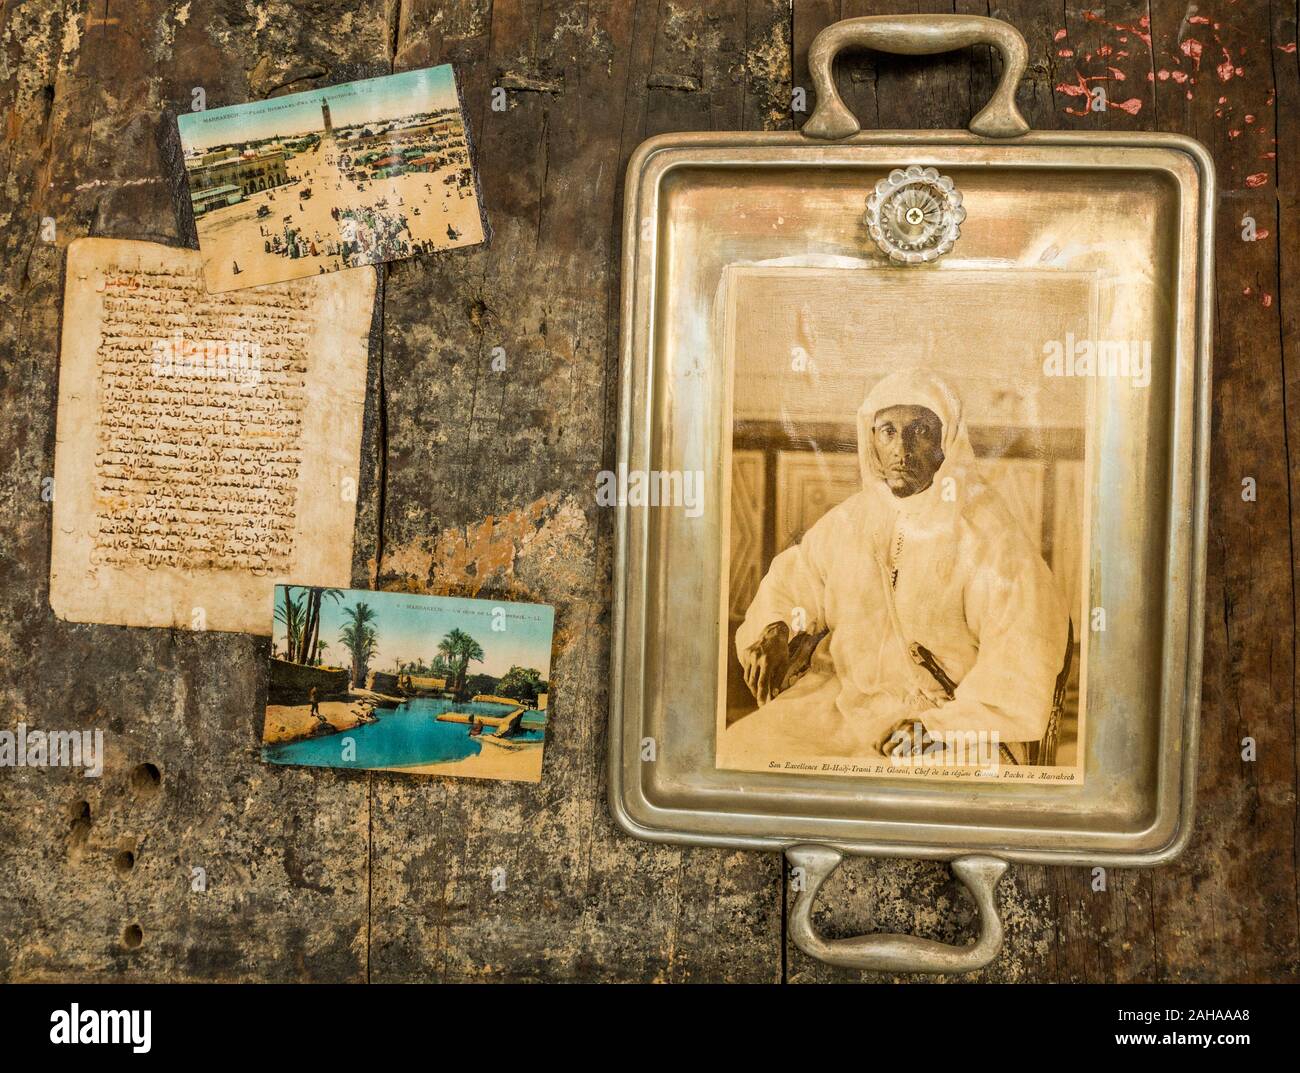 Fotos y postales vintage en un Riad, decoración de estilo oriental, Marrakech, Marruecos. Foto de stock